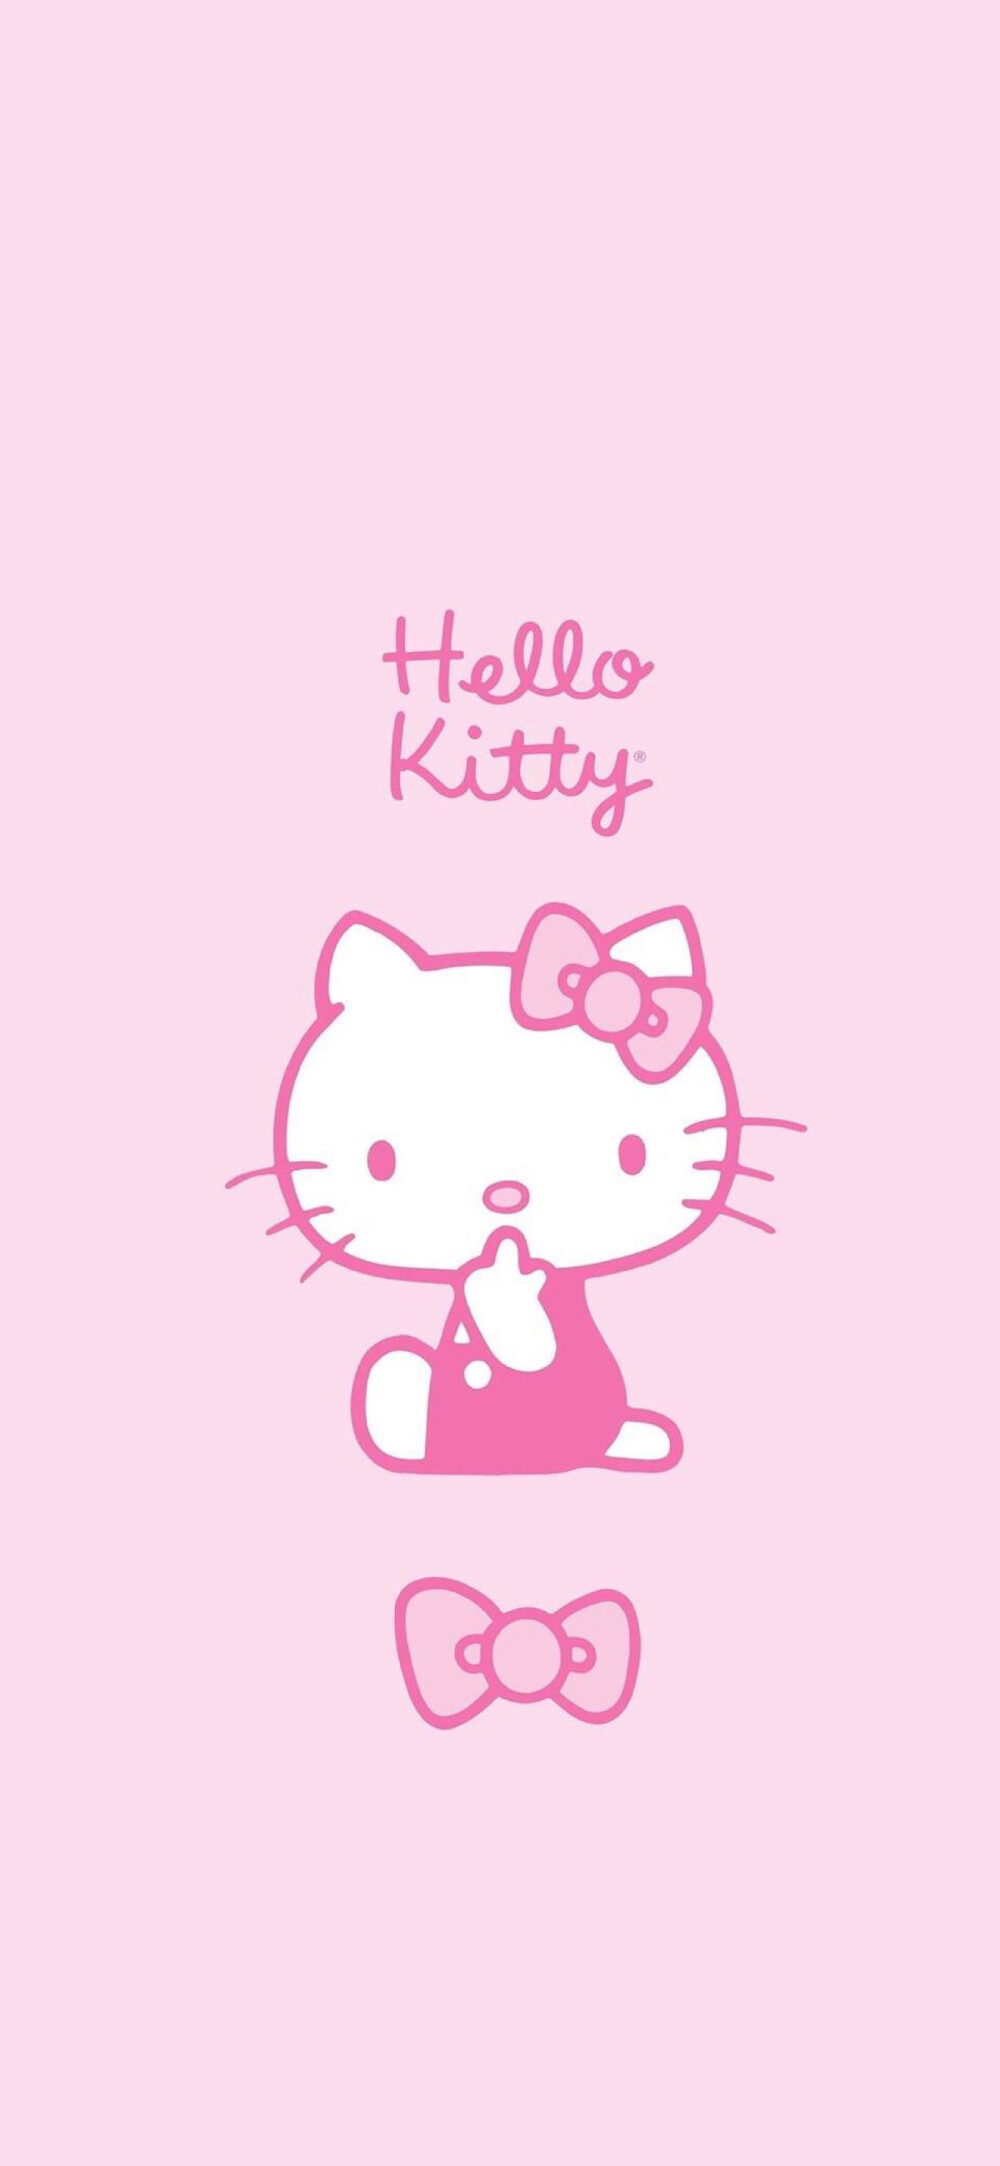 iPhone 壁纸 Hello Kitty 凯蒂 KT猫